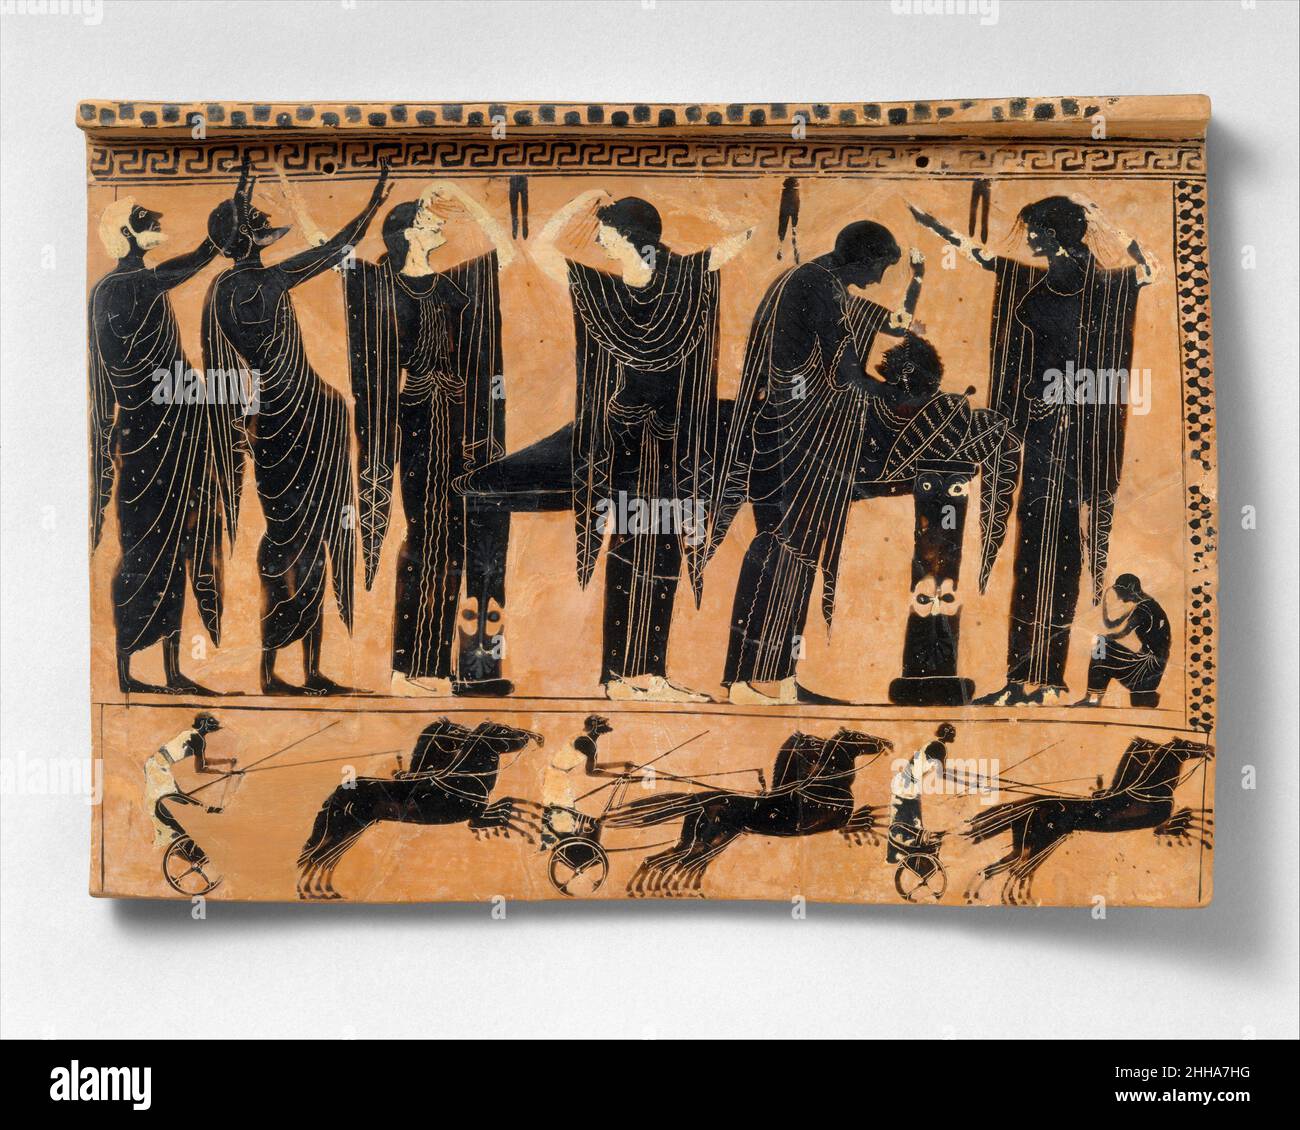 Terrakotta-Grabplatte ca. 520–510 v. Chr. Griechisch, attische Prothese (Auslegen der Toten); unten, WagenrenneIm zweiten 6. Jahrhundert v. Chr. wurden die aufwendigen Reihen von Grabplatten, die in die Wände rechteckiger Gräber gesetzt wurden, durch einzelne Tafeln mit Löchern zur Befestigung ersetzt. Das Wagenrennen, ein wiederkehrendes Thema in der attischen Grabkunst, kann die Beerdigungsspiele evozieren, die zu Ehren legendärer Helden abgehalten werden, wie jene im Buch 23 der Ilias, als Achilles seinen verstorbenen Freund Patroklos ehrte. Terrakotta-Grabplatte 254801 Stockfoto